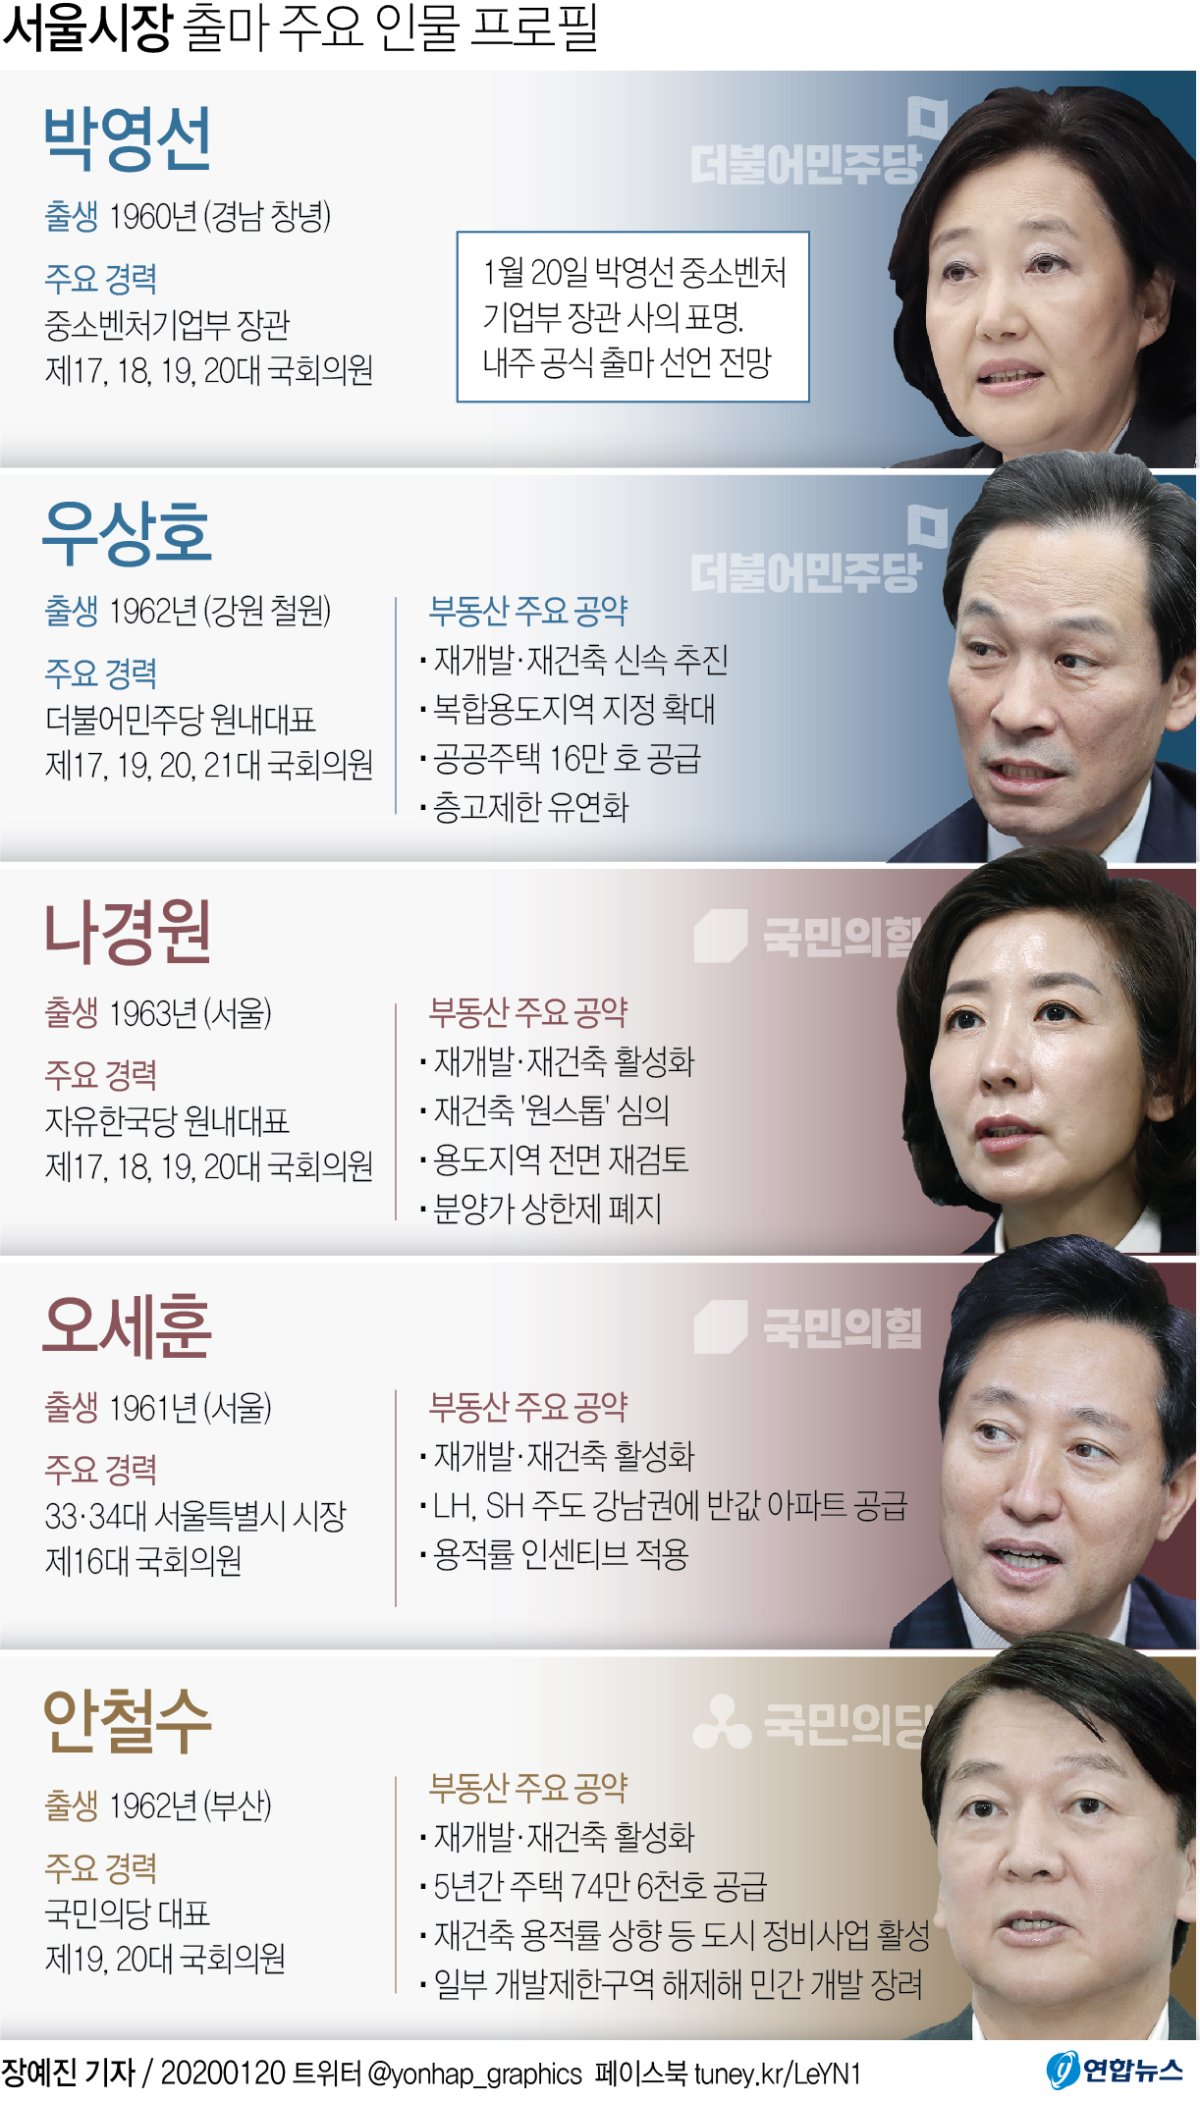 [그래픽] 서울시장 출마 예상 주요 인물 프로필